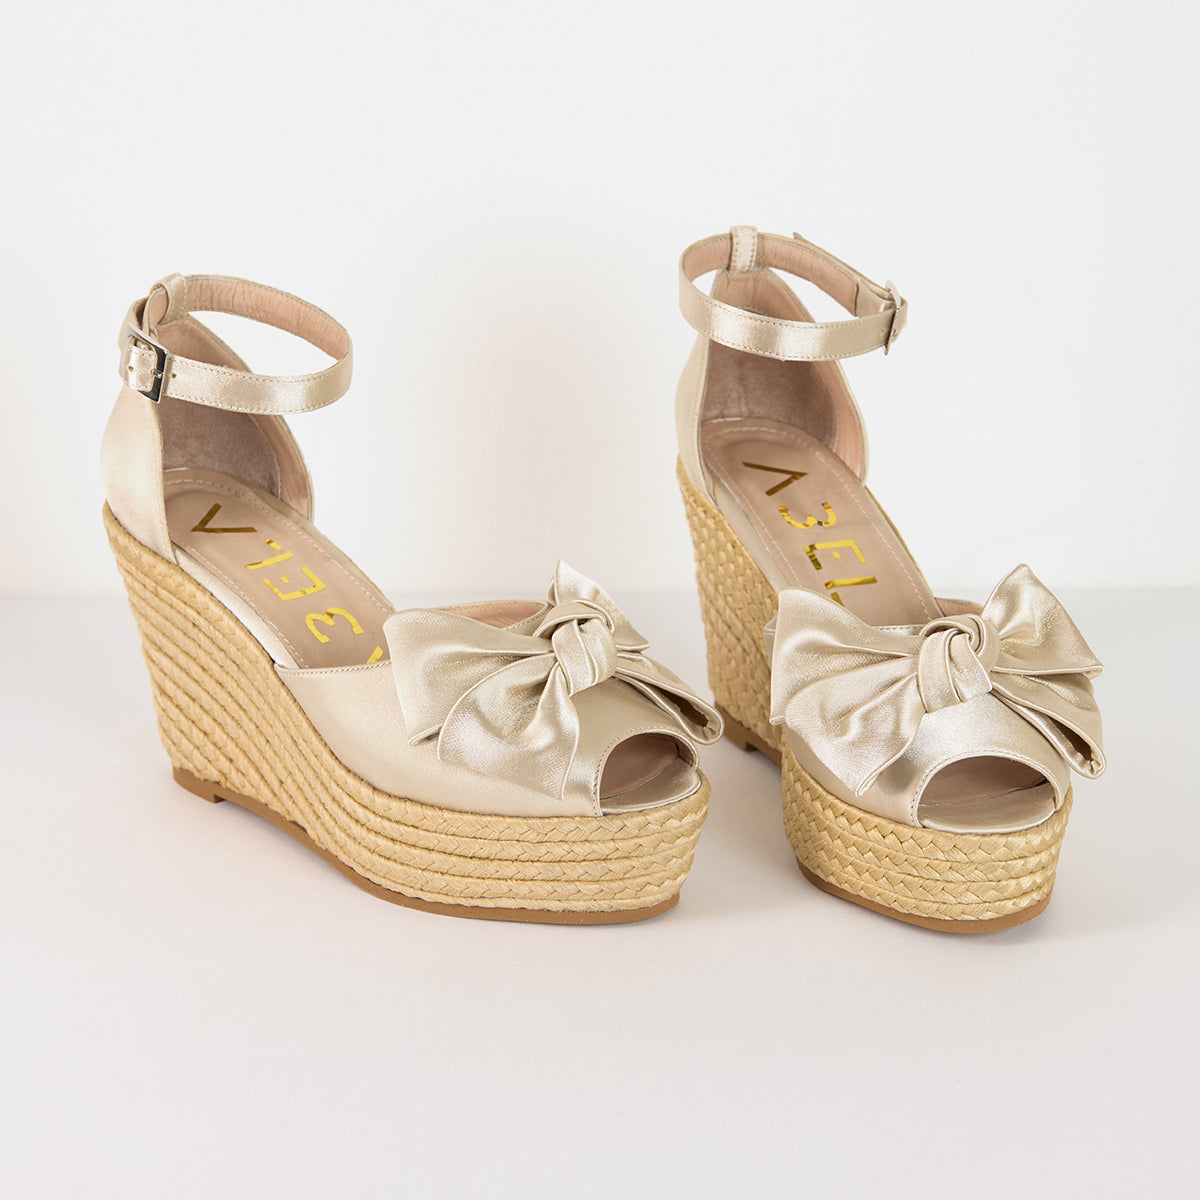 Vera heels - Size 34